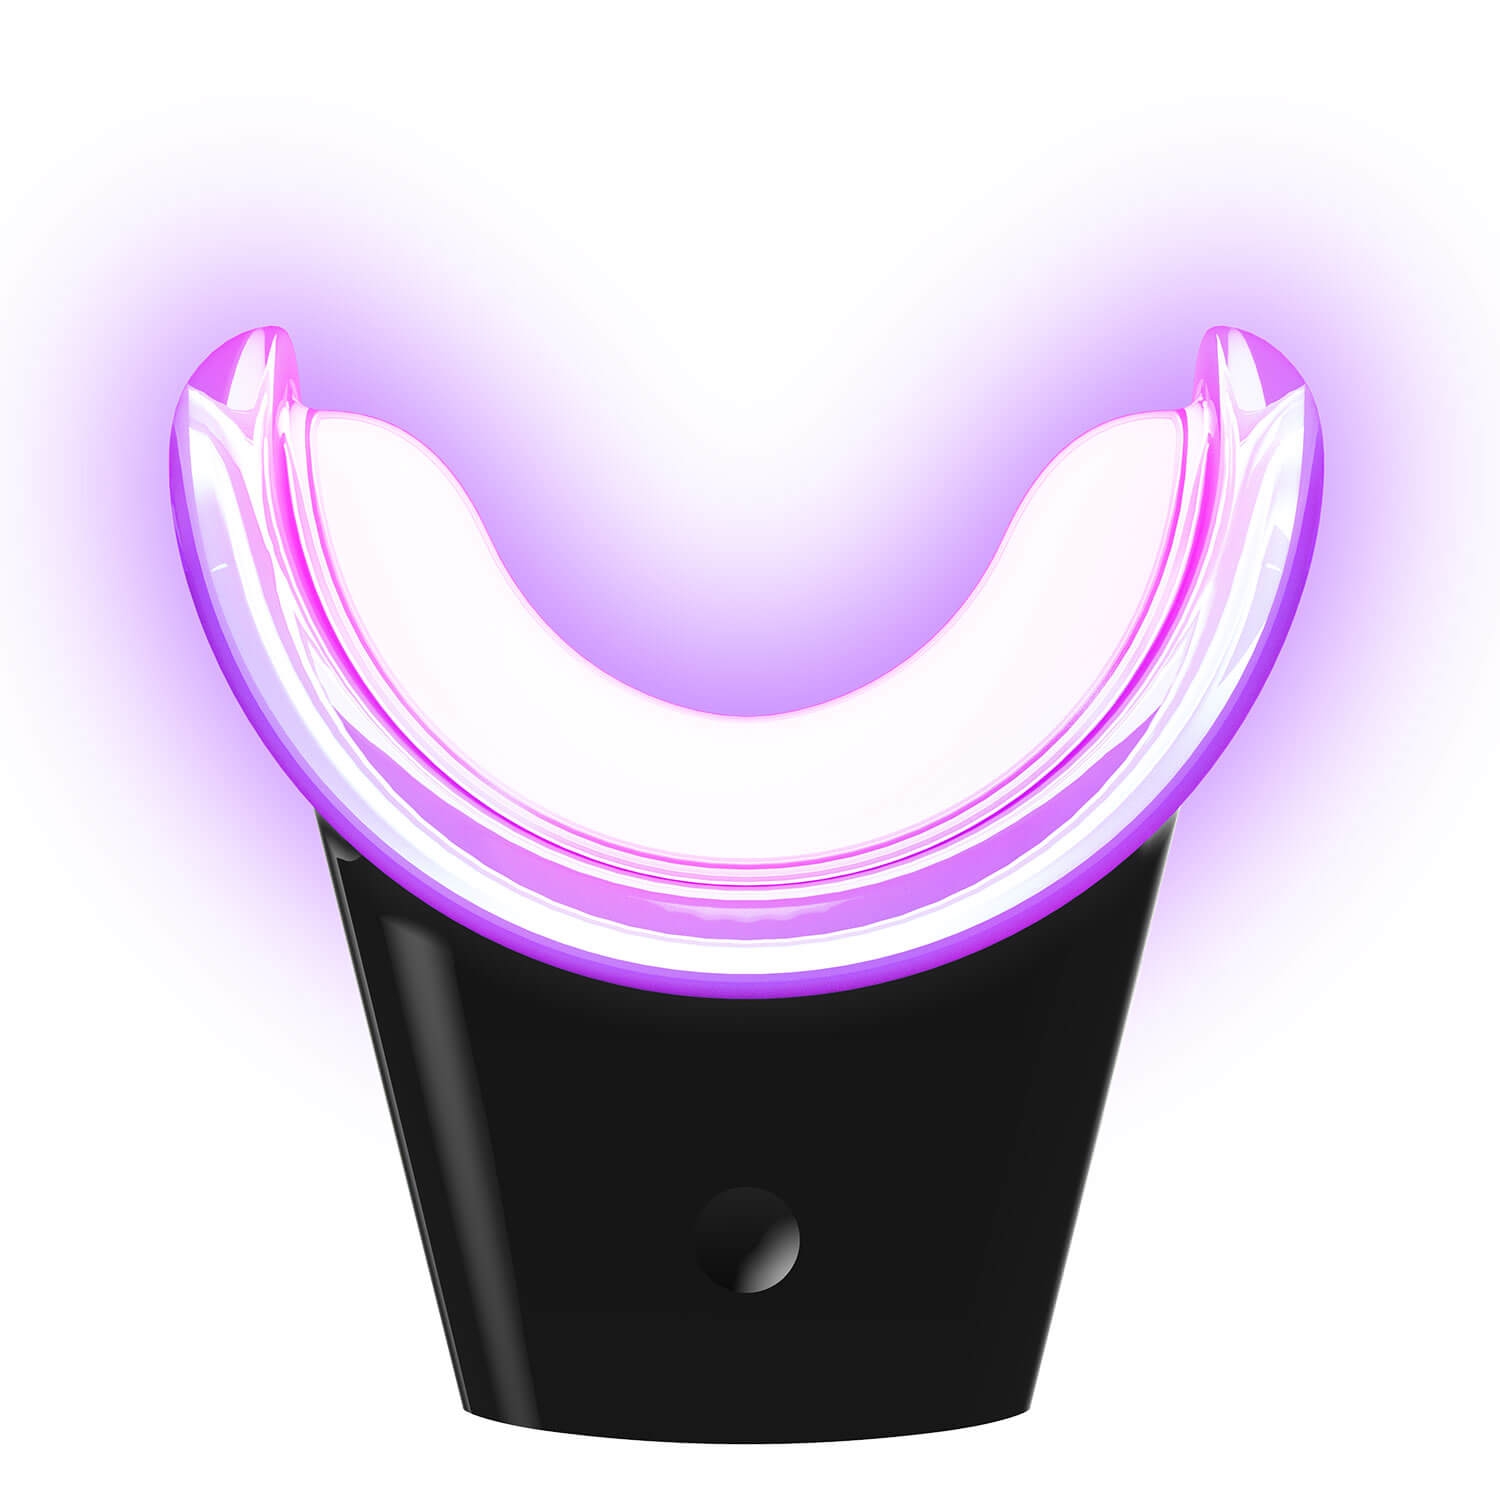 Produktbild von smilepen - Wireless Whitening Accelerator